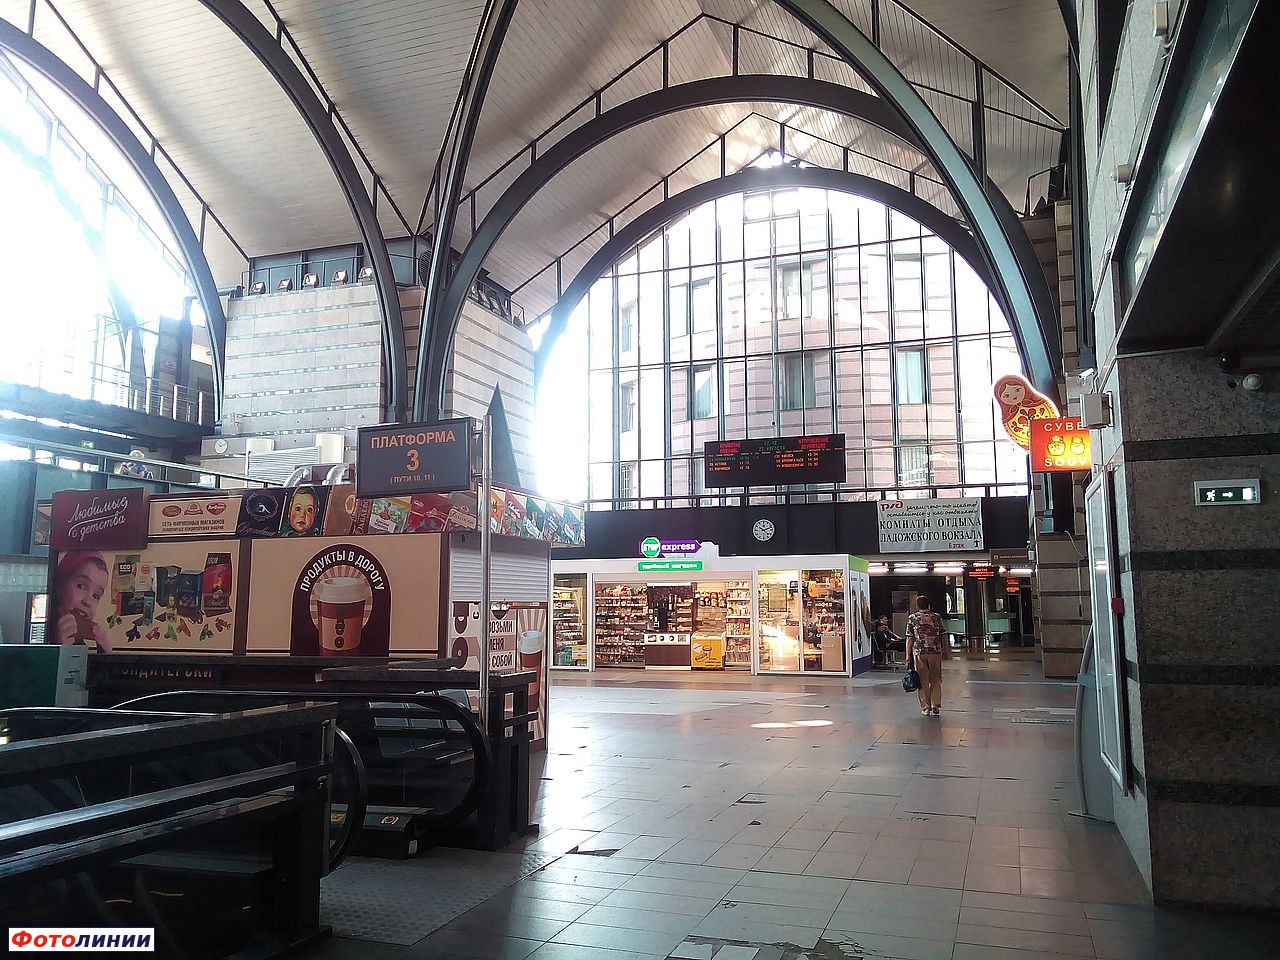 Ладожский вокзал зал ожидания